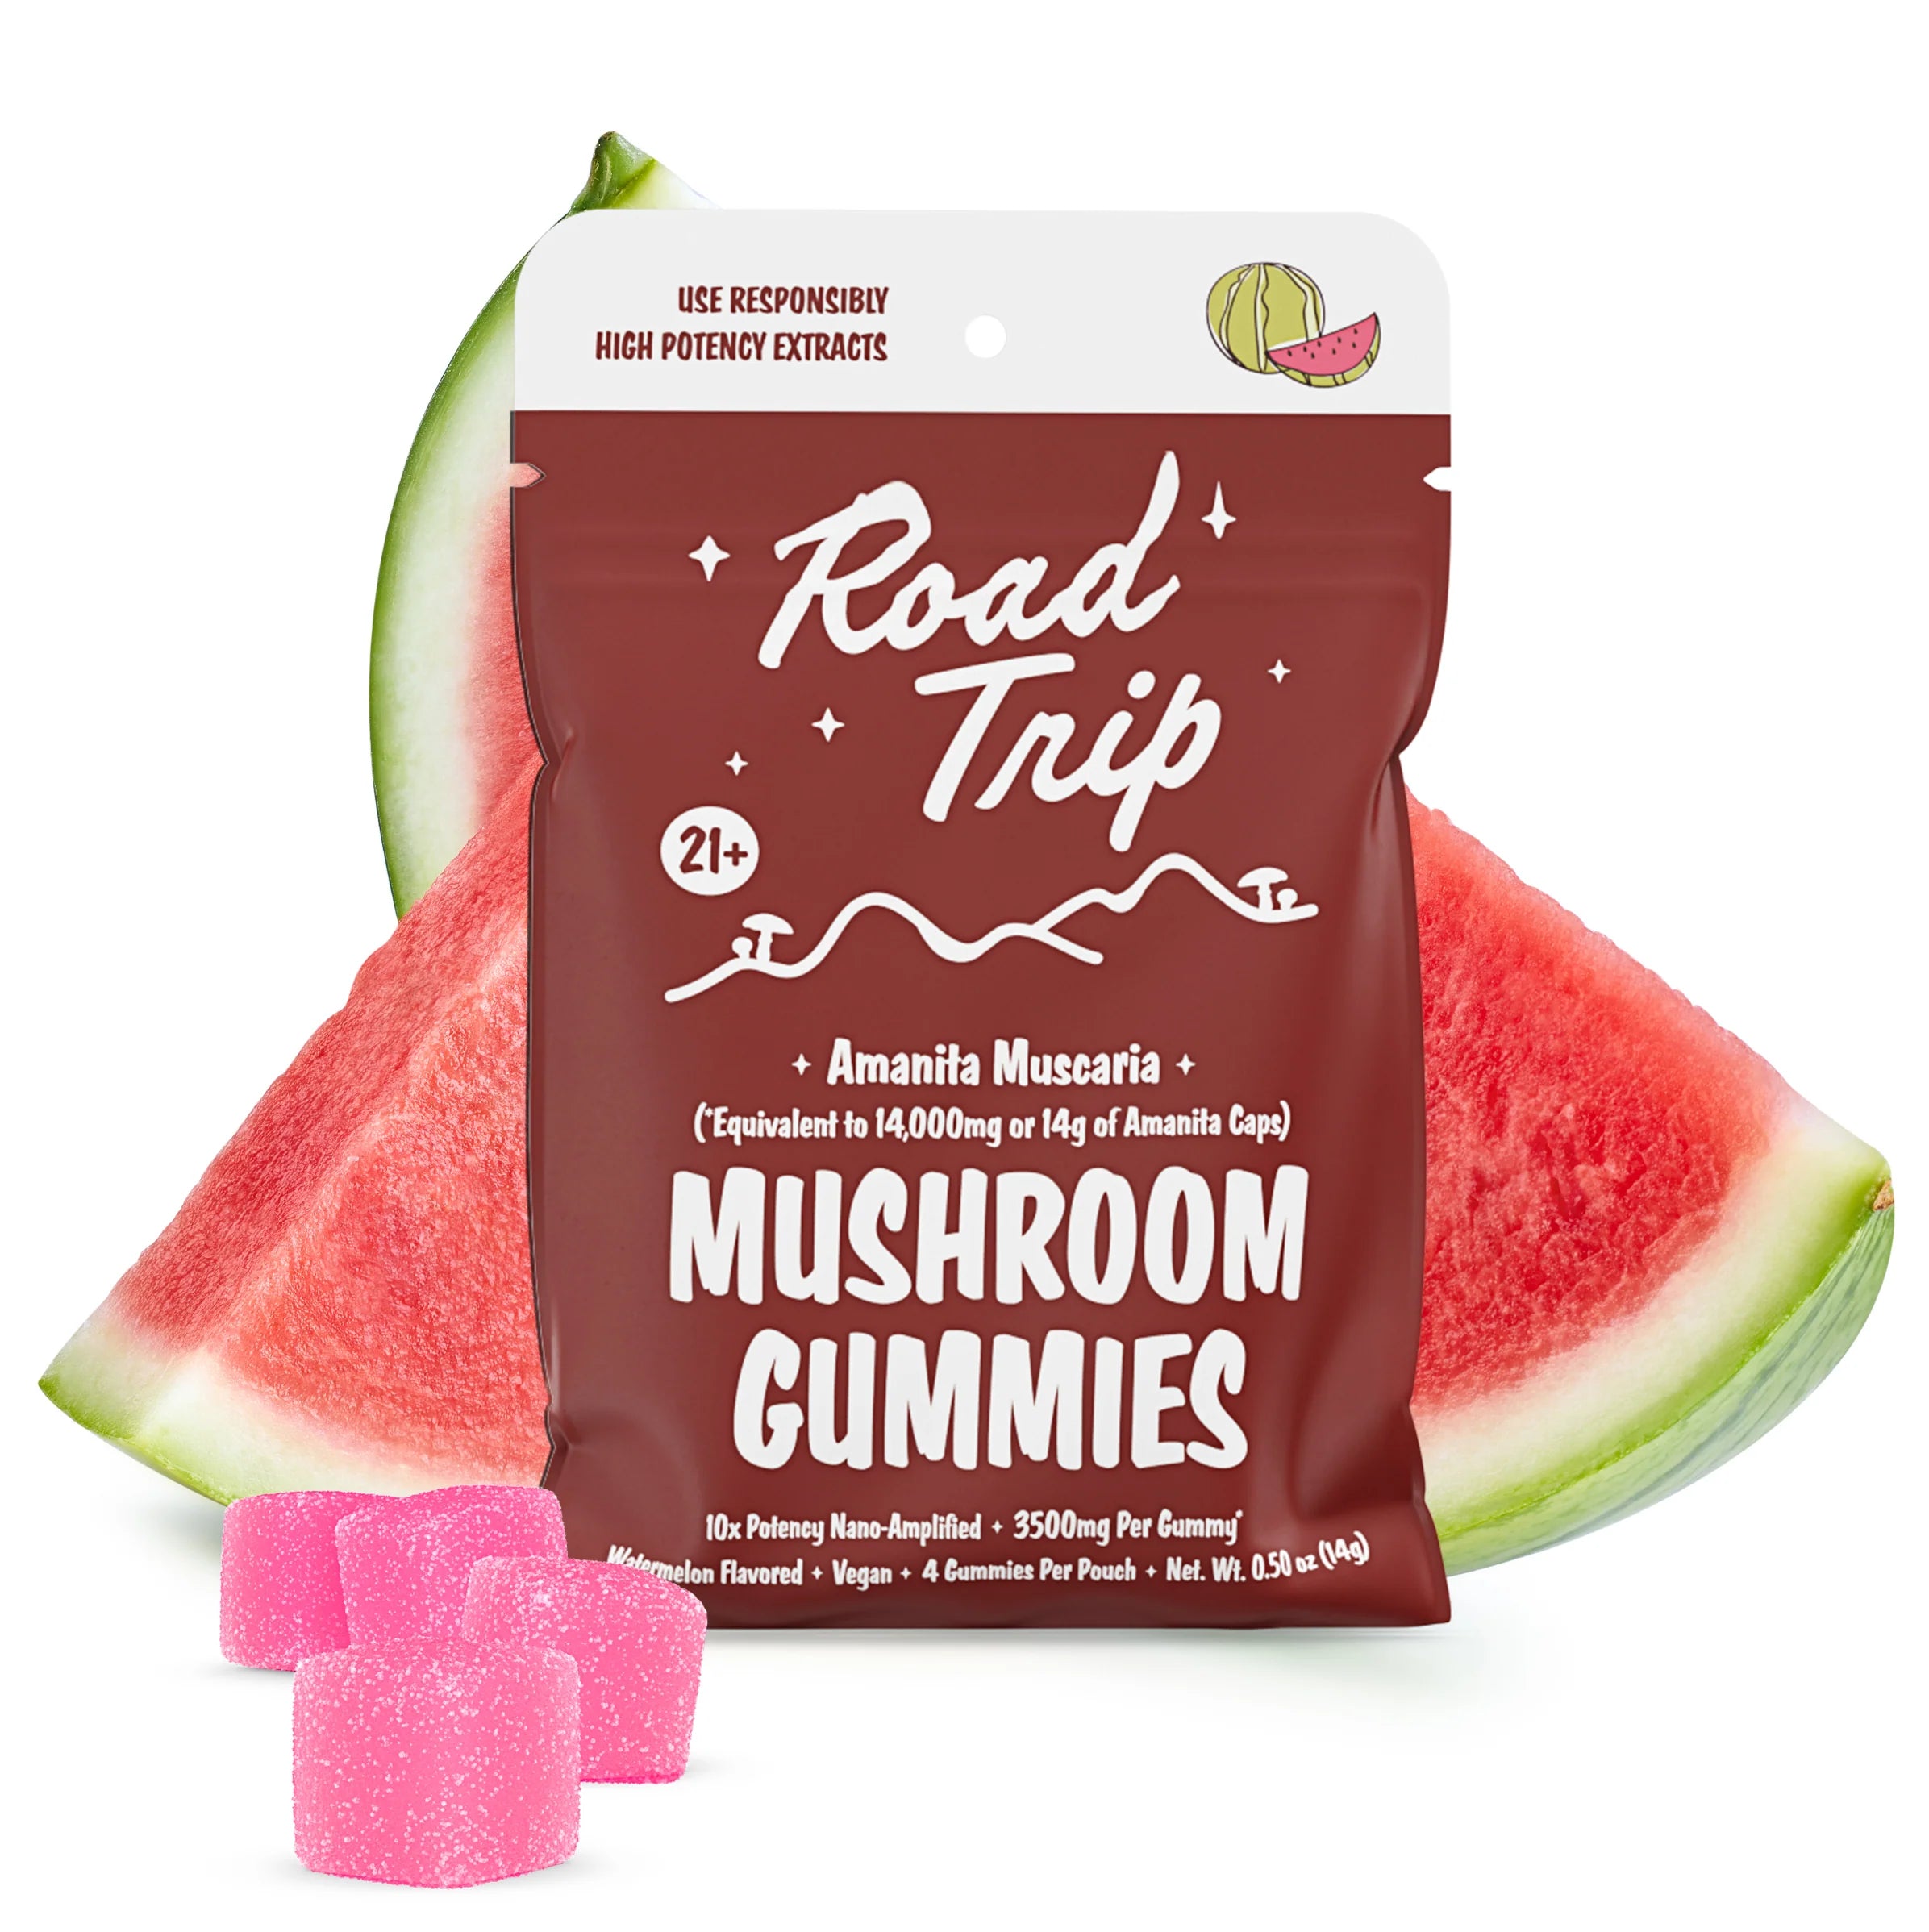 Road Trip Amanita Muscaria Mushroom Gummies Watermelon 4 Per Pouch - 14g